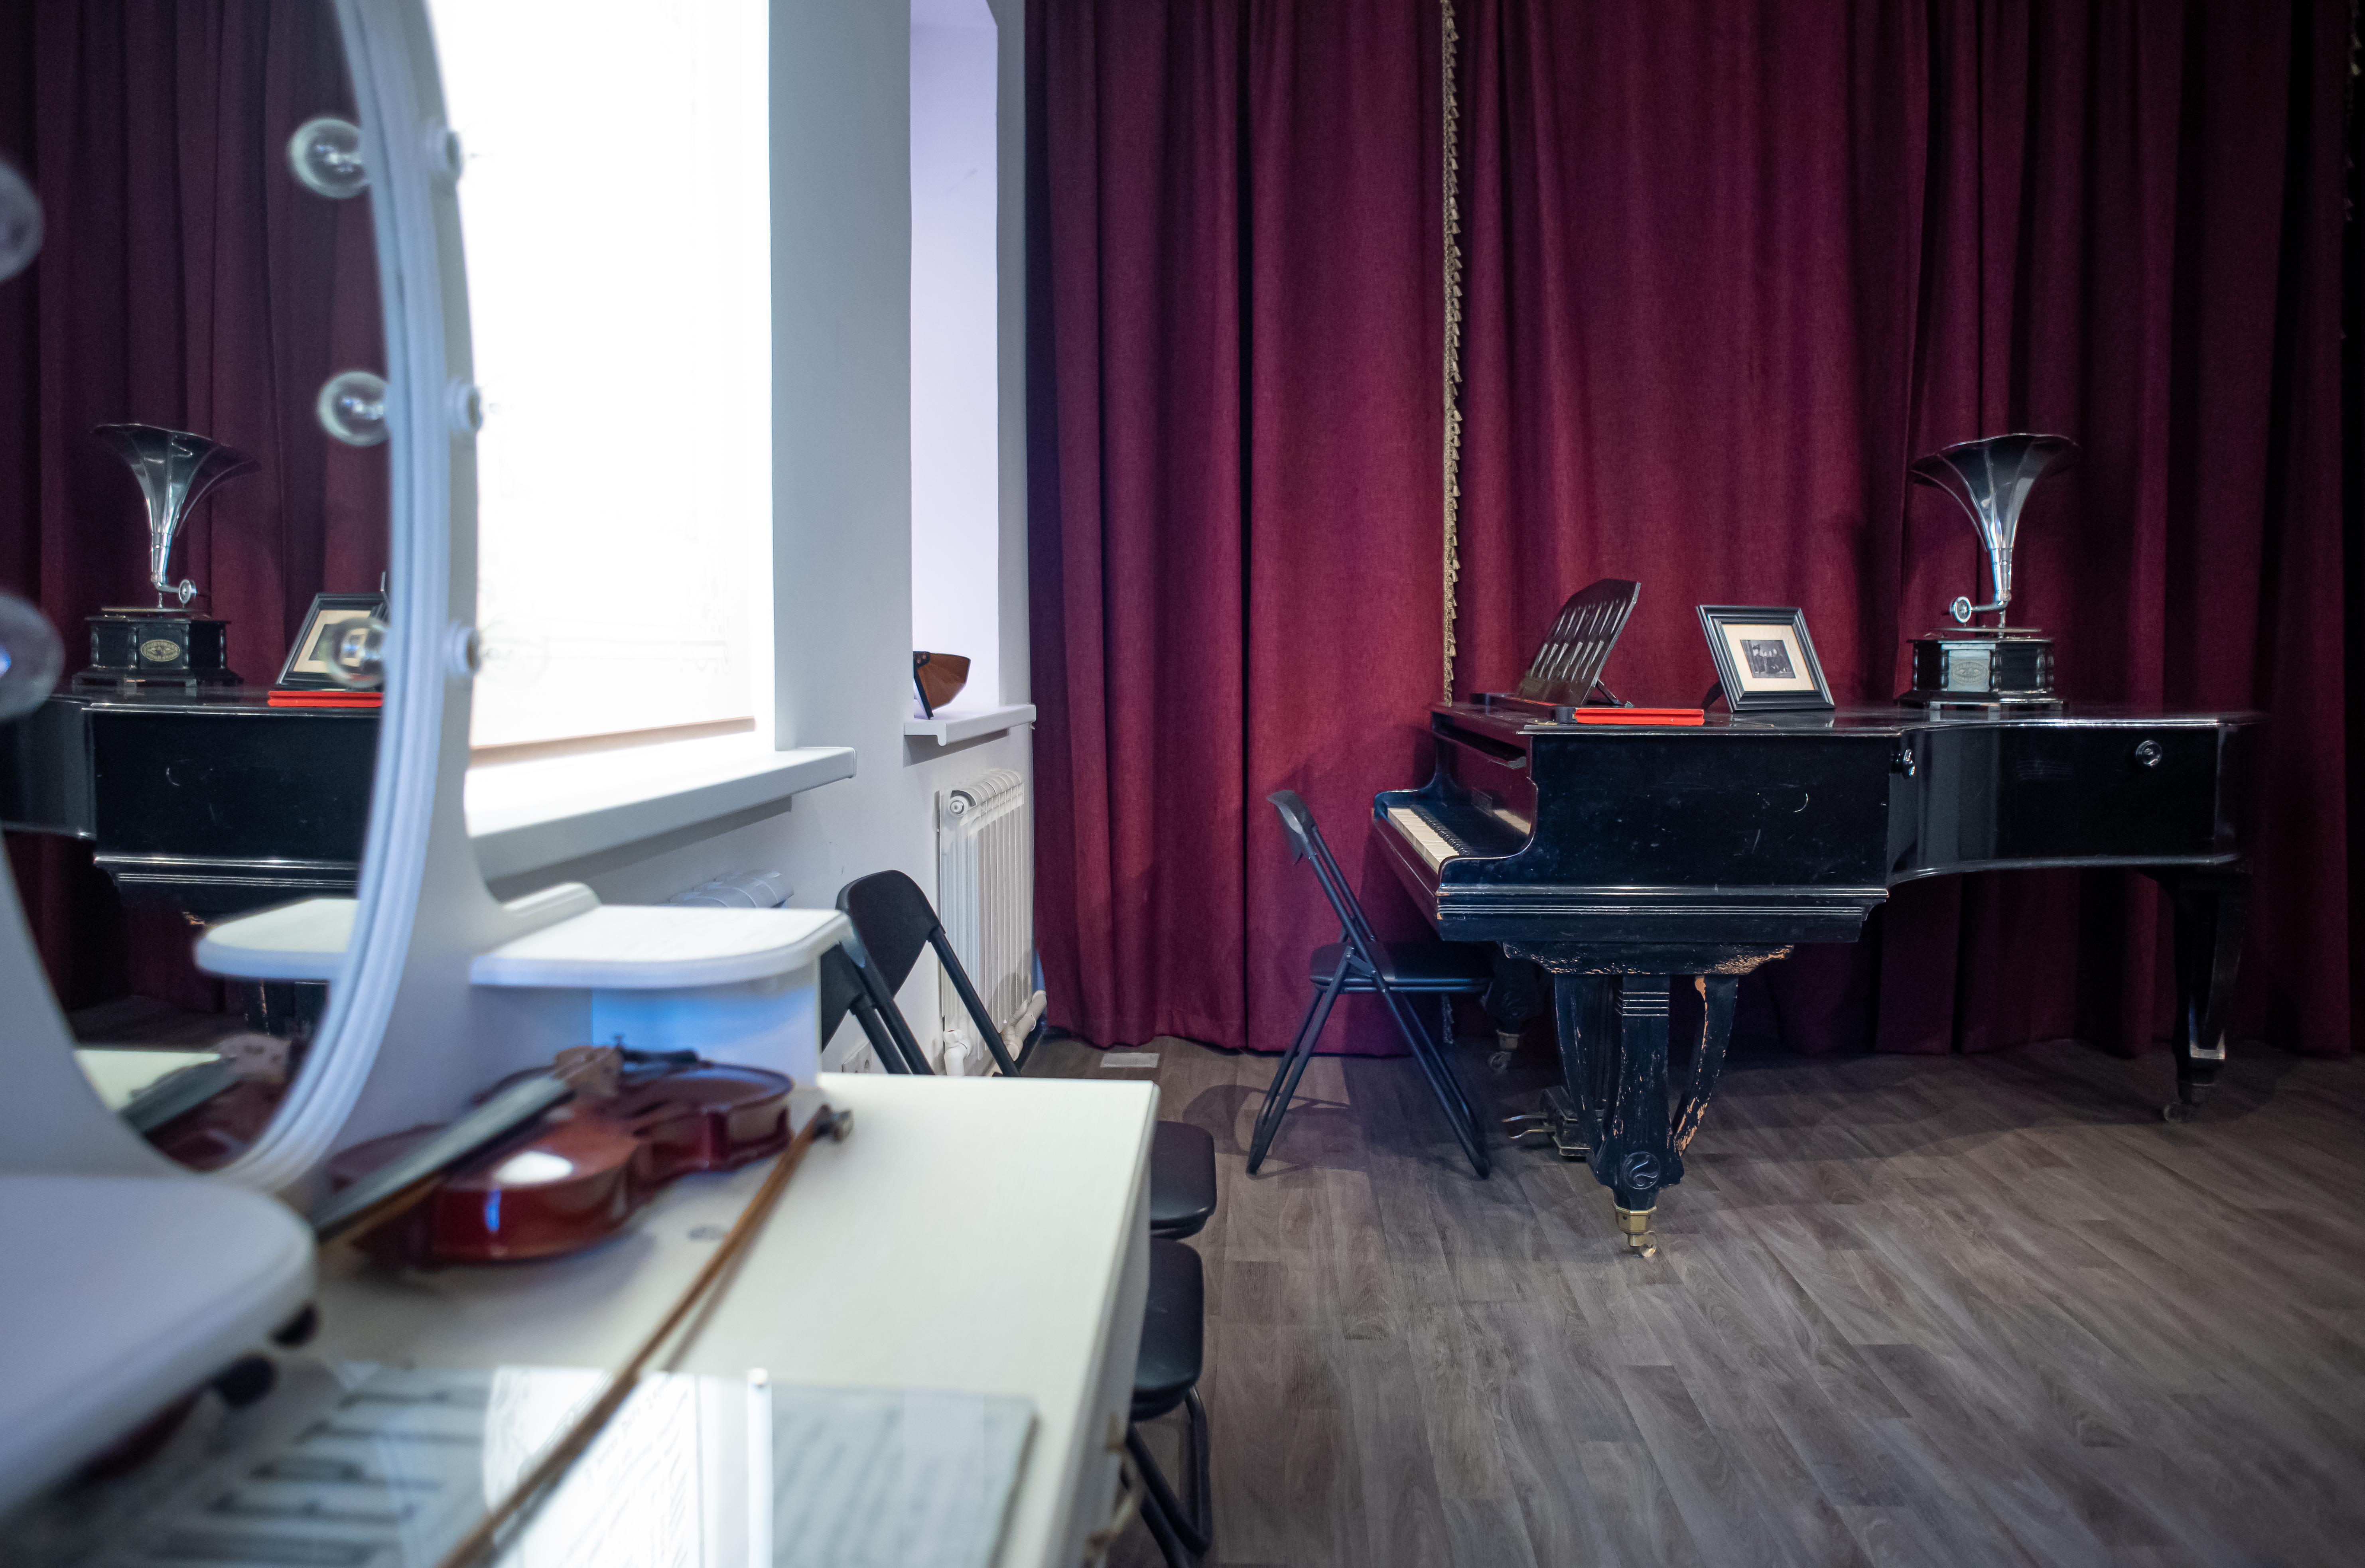 Гостям музея представлены кадры приезда в Орехово-Зуево известного певца Федора Шаляпина и рояль, под звуки которого он пел со сцены Летнего театра